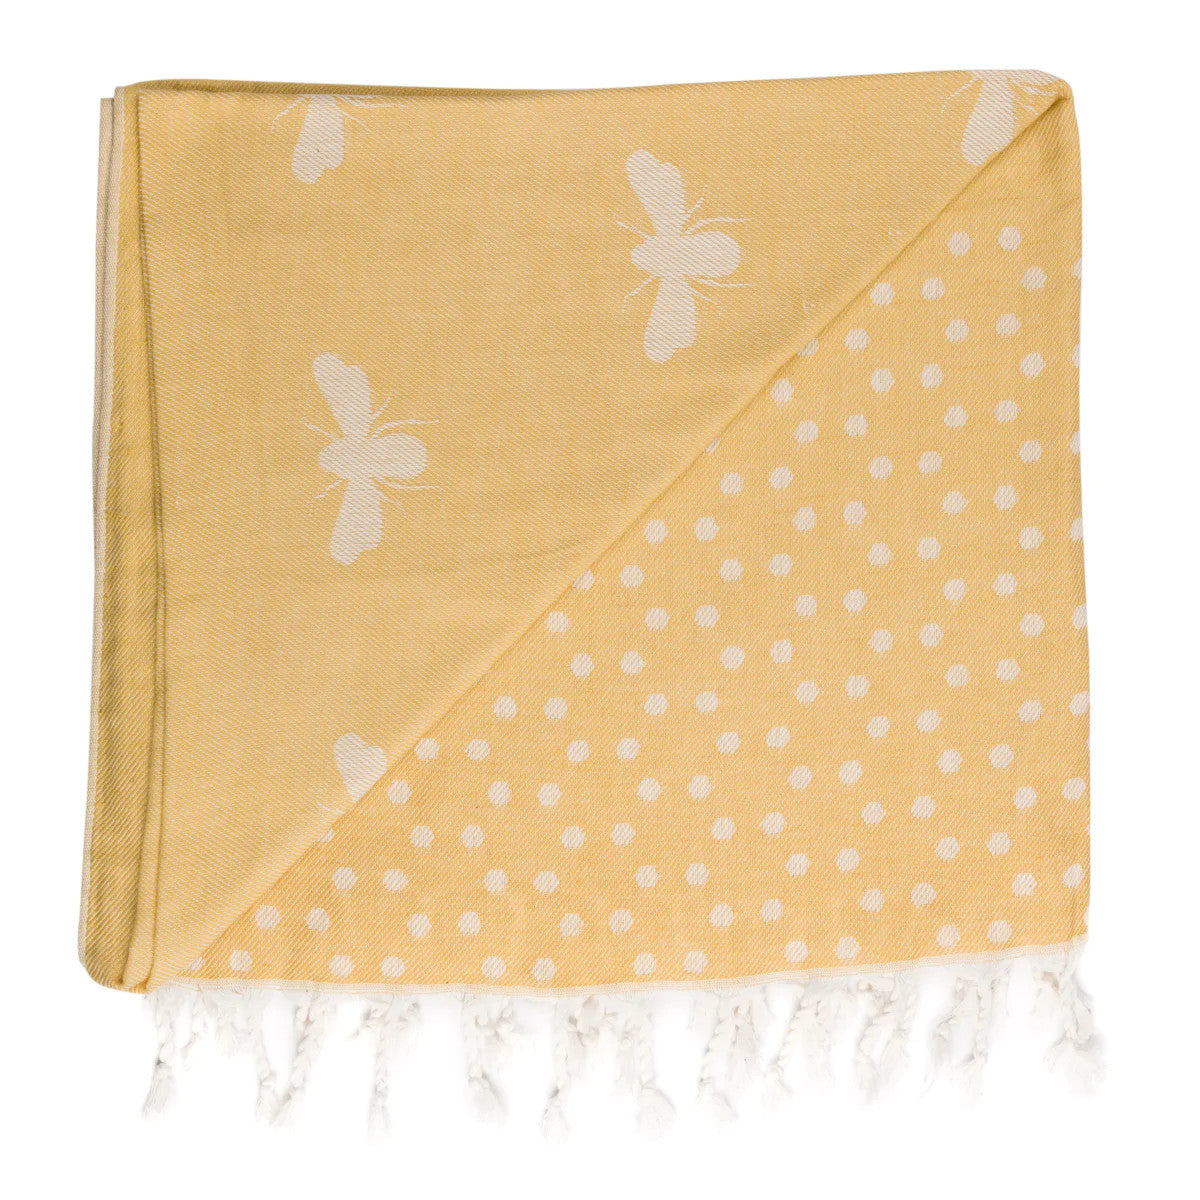 Sophie Allport Bees Hammam Towel